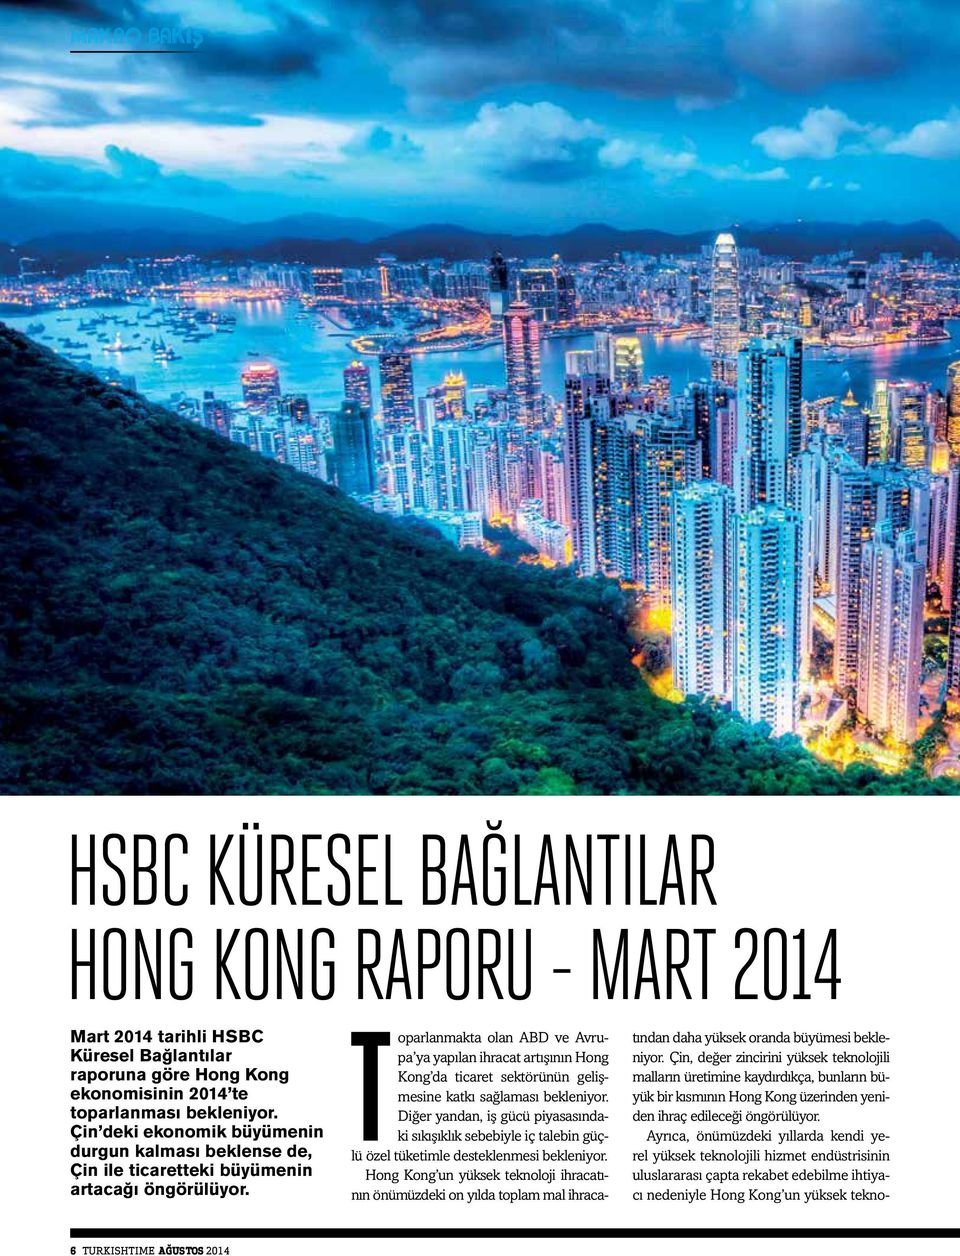 Toparlanmakta olan ABD ve Avrupa ya yapılan ihracat artışının Hong Kong da ticaret sektörünün gelişmesine katkı sağlaması bekleniyor.